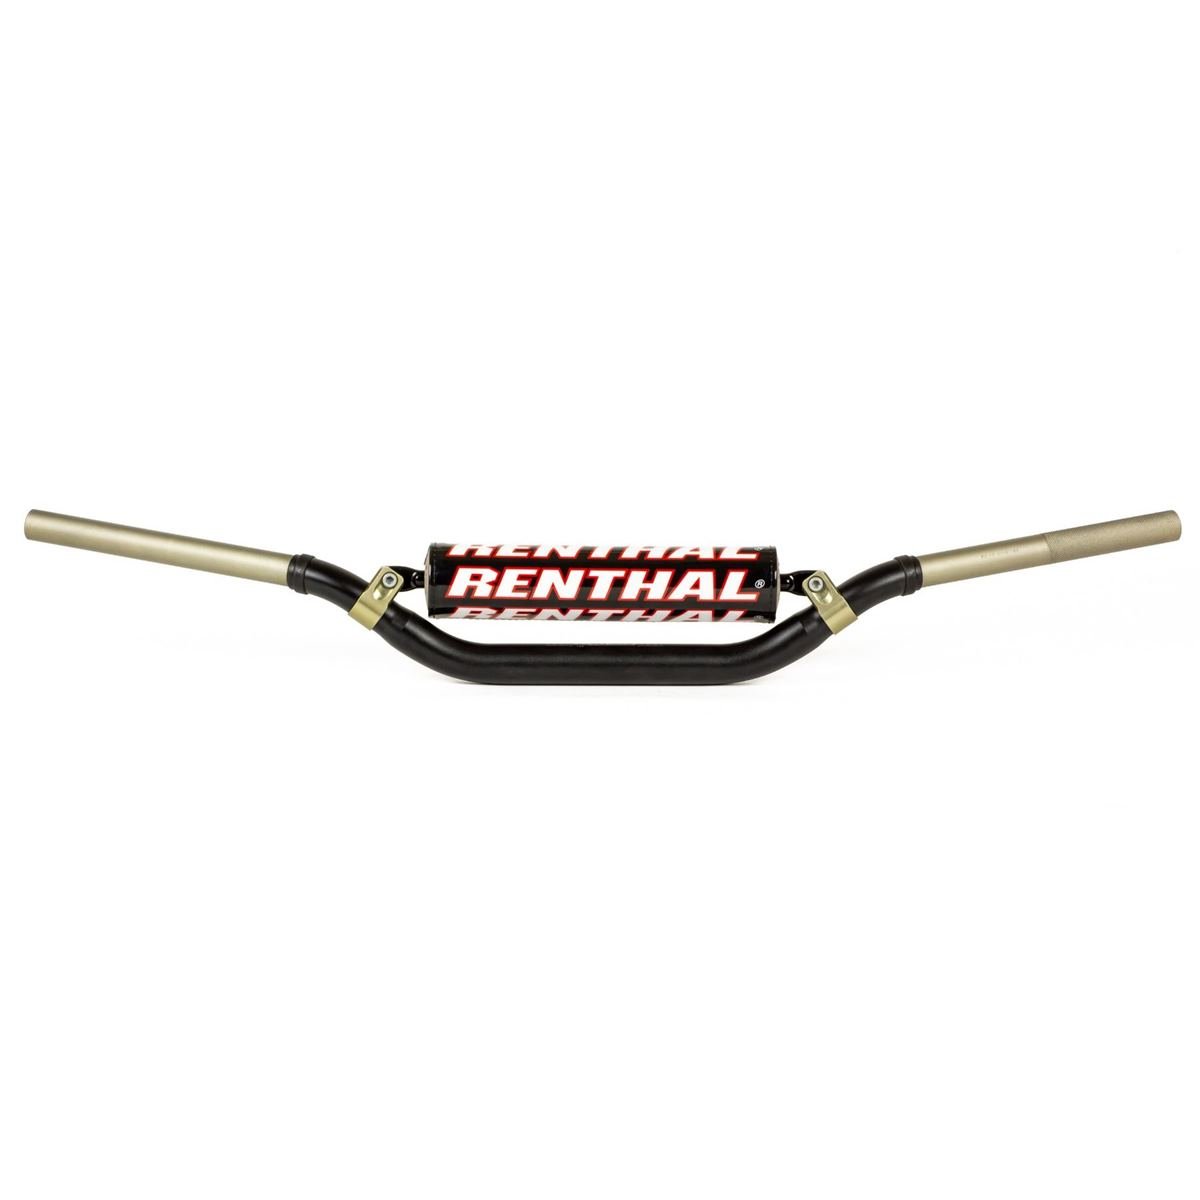 Renthal Lenker Twinwall 990, 28.6 mm, YZ/YZ-F